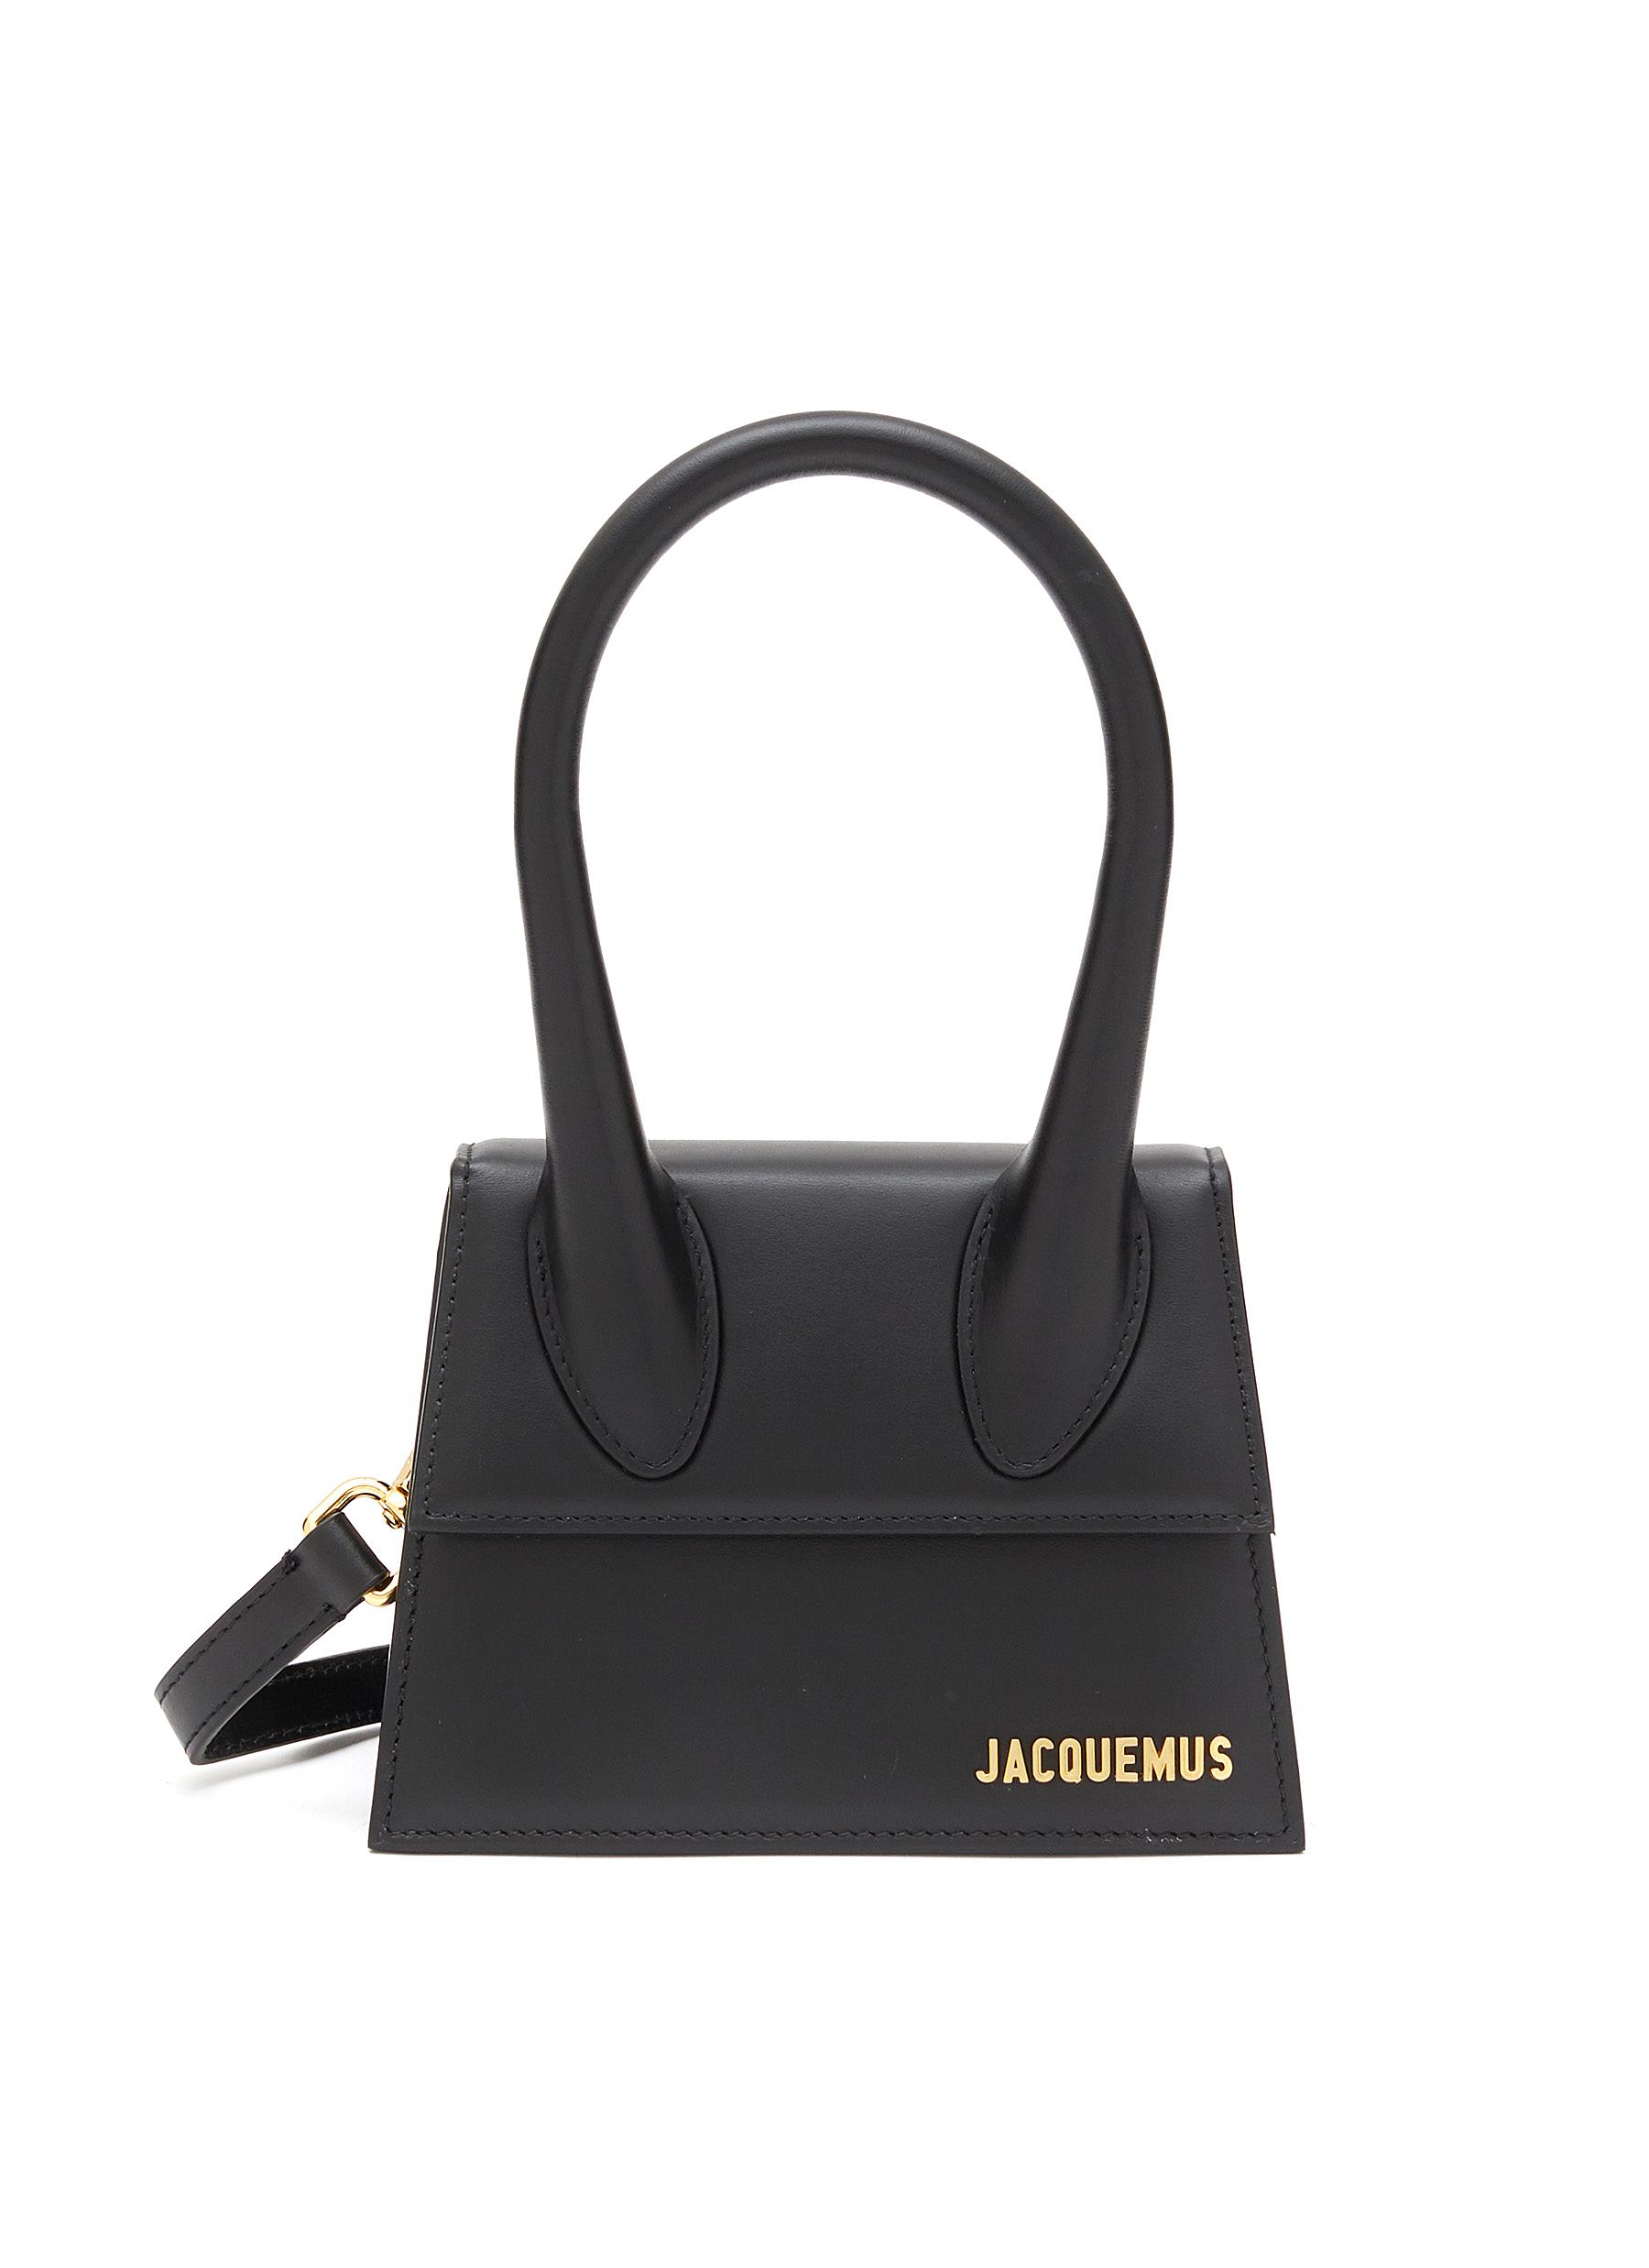 JACQUEMUS, Medium 'Le Chiquito' Leather Shoulder Bag